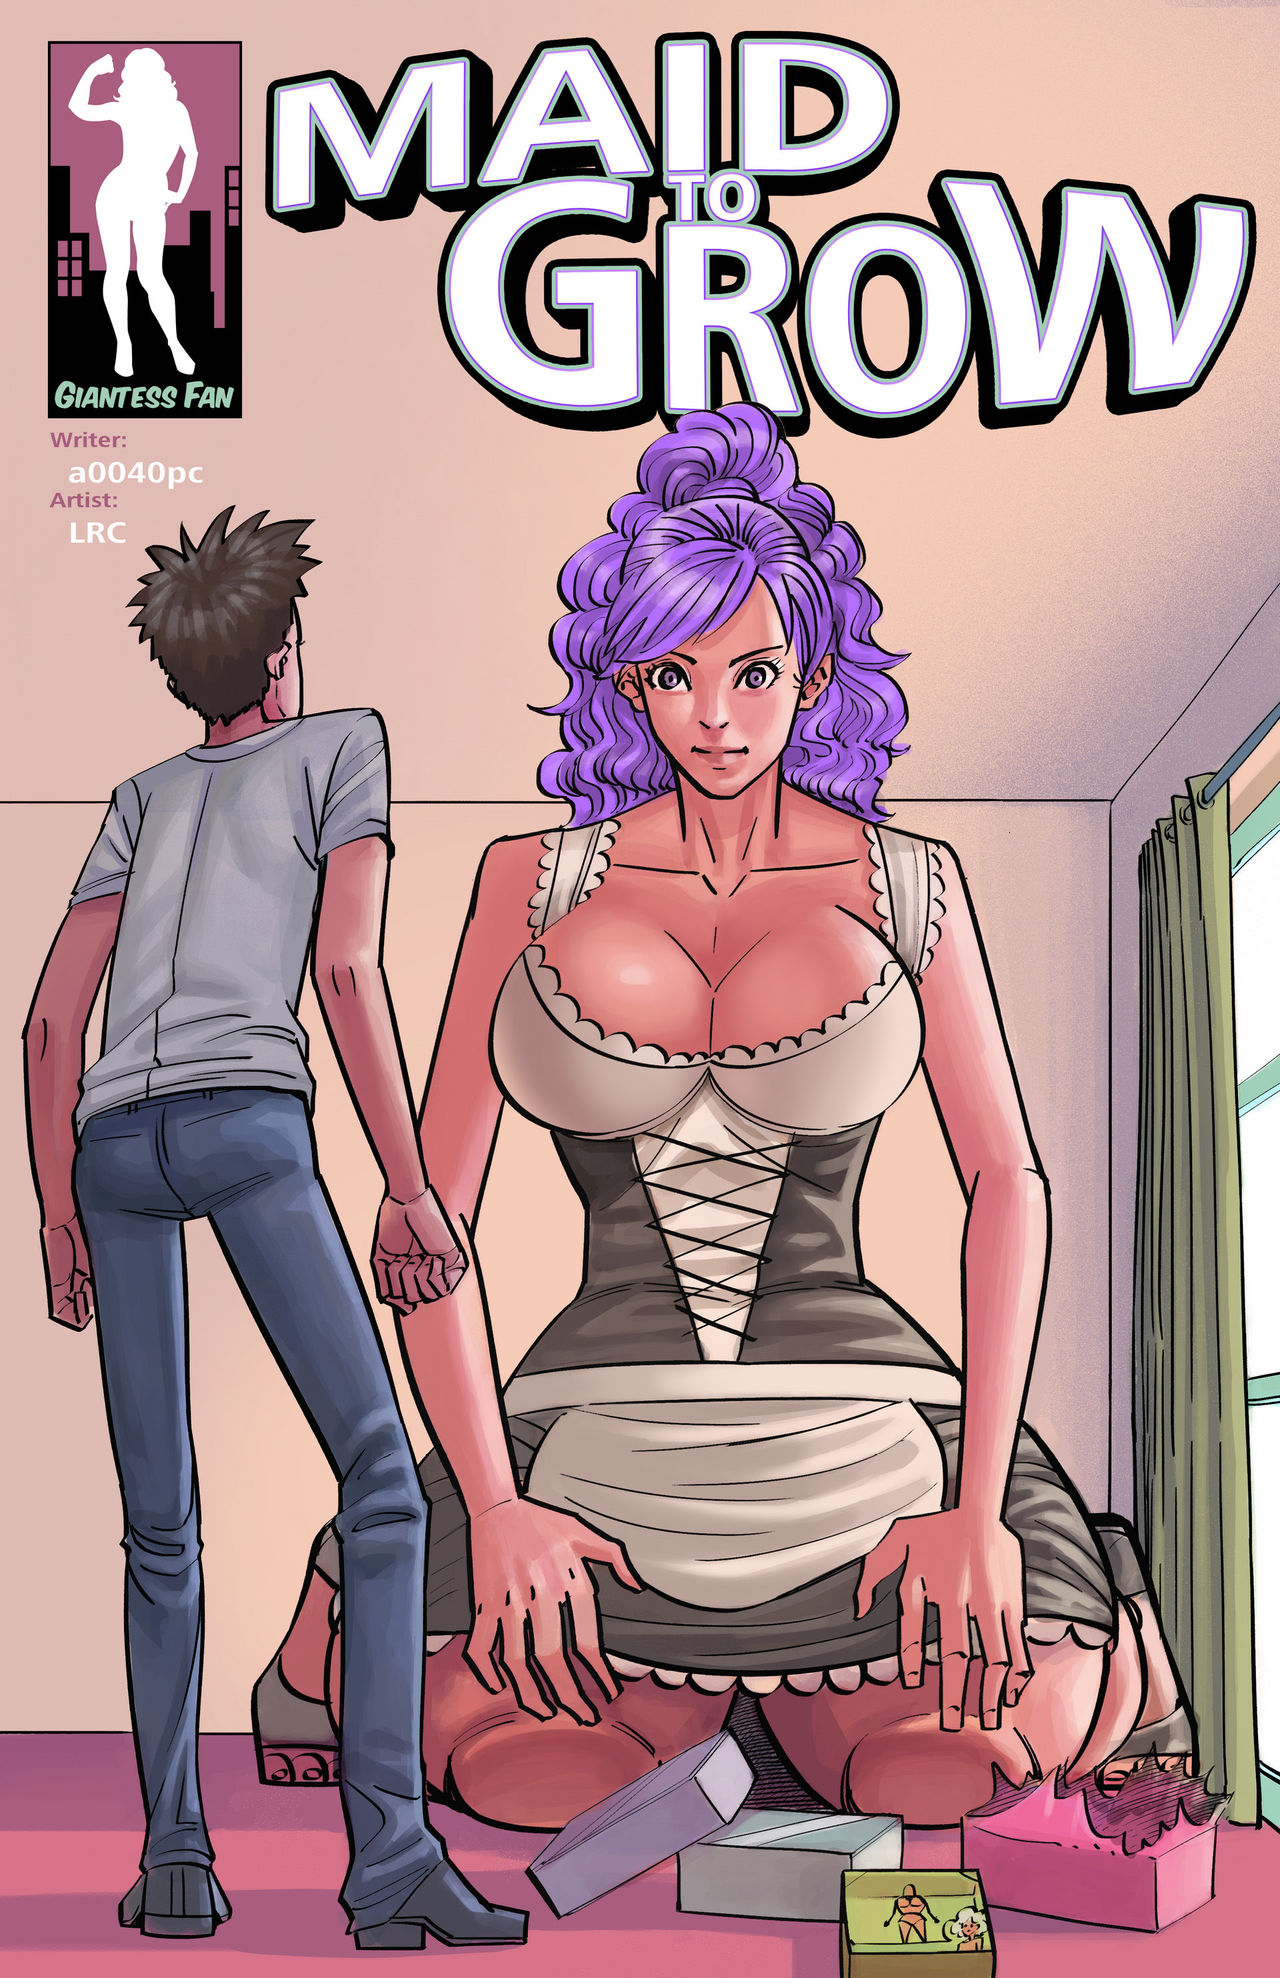 Gigantess porn comics